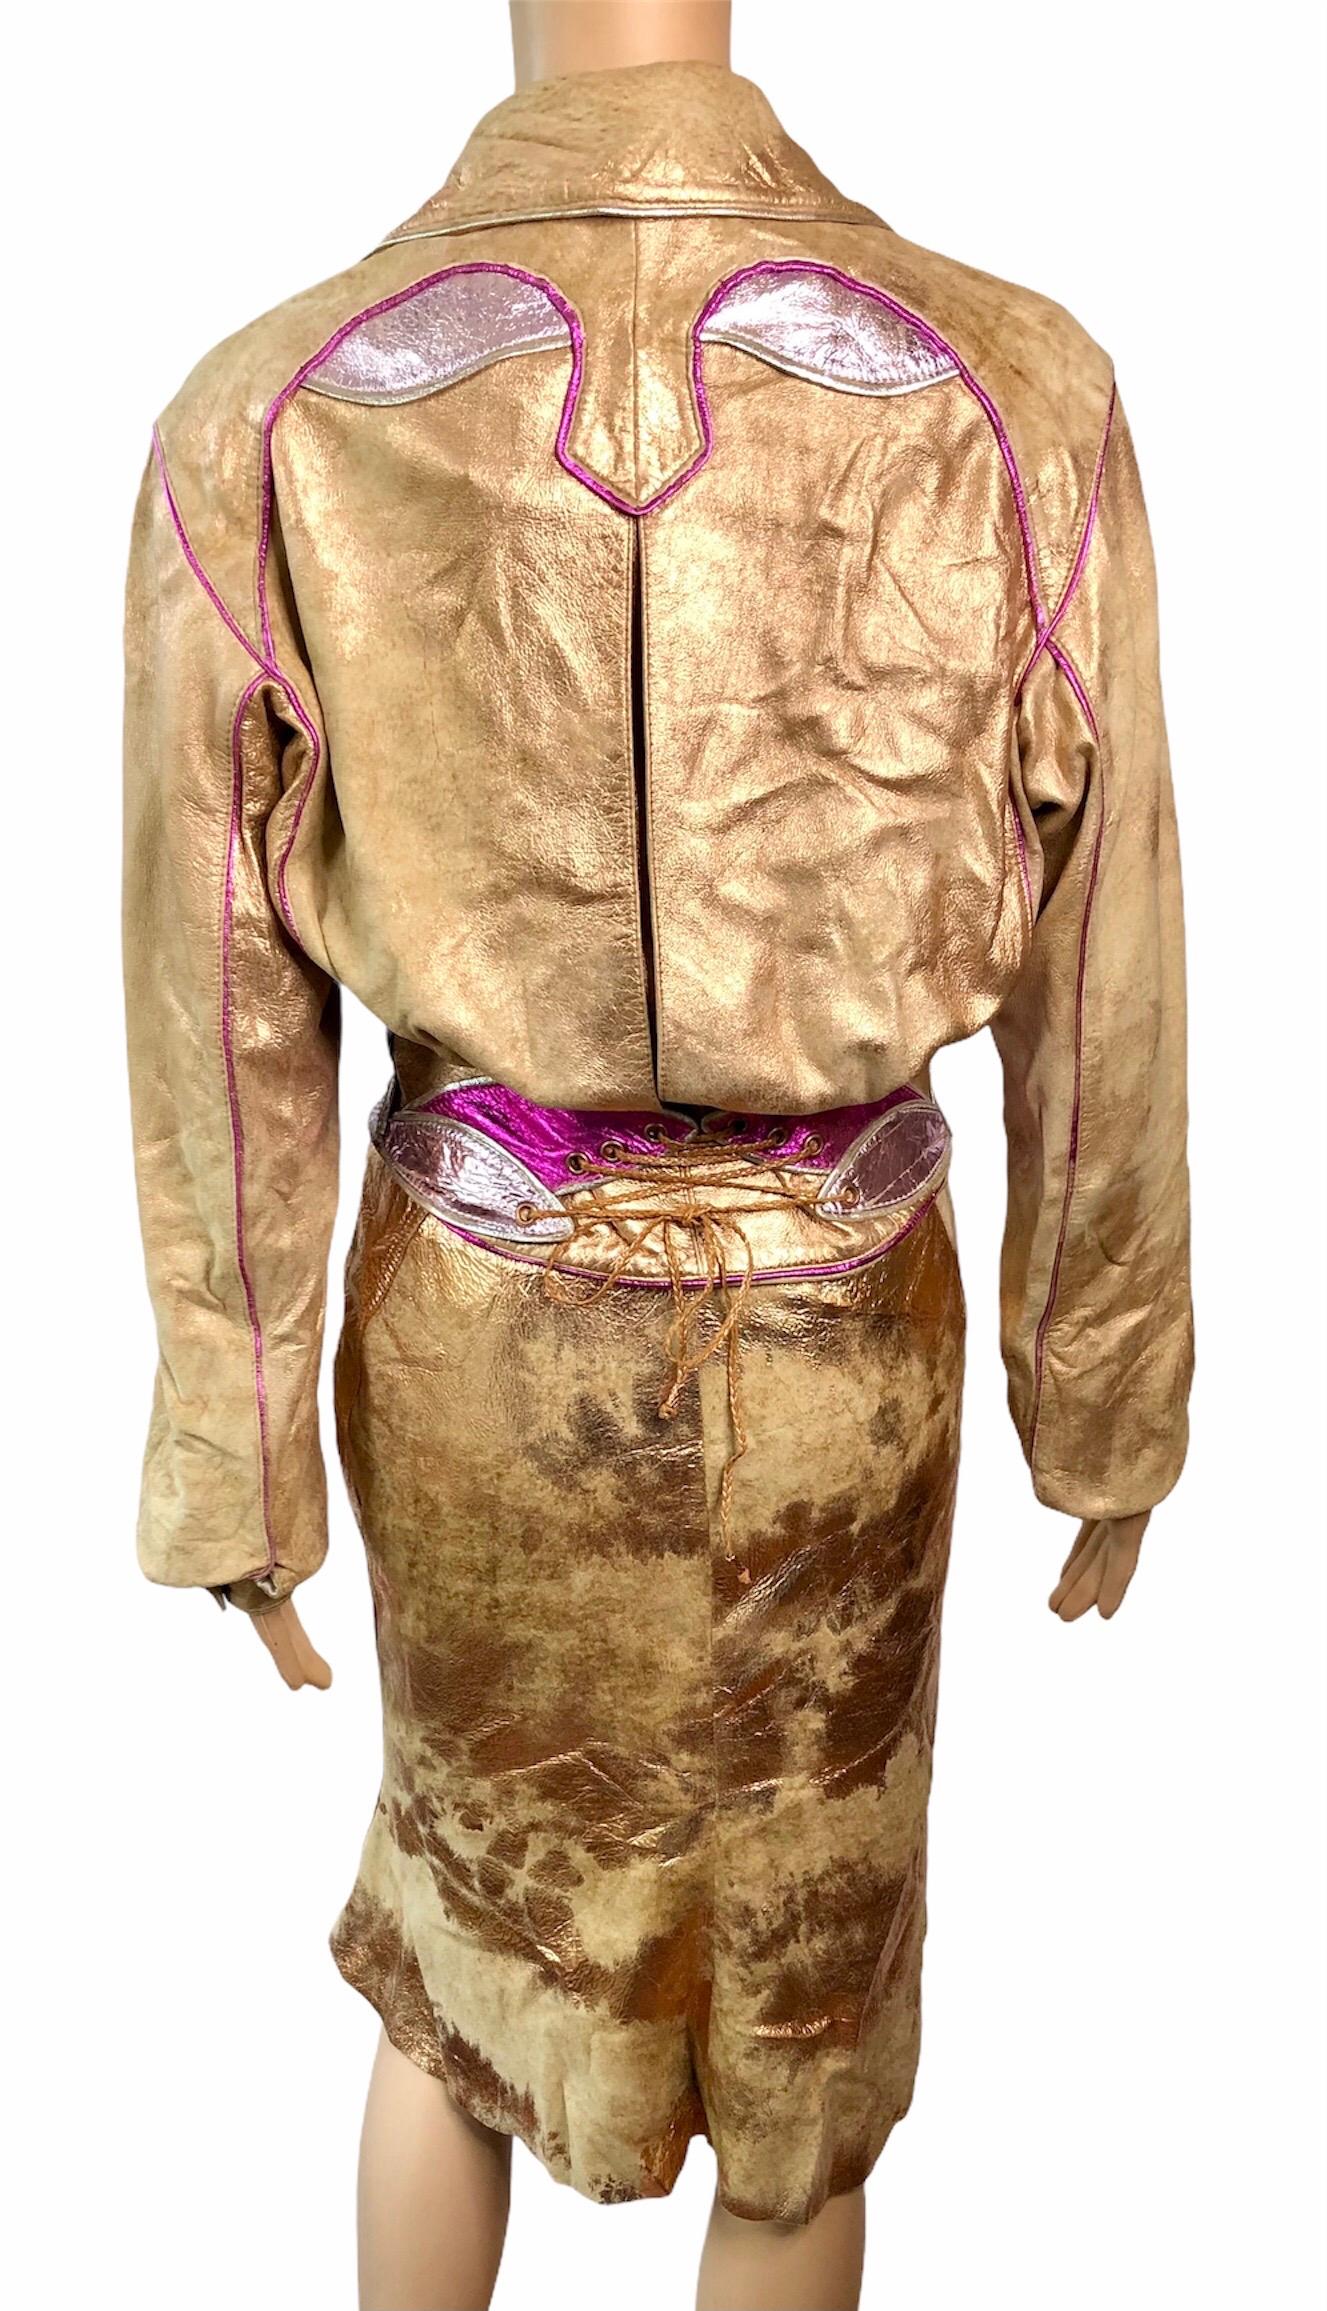 Women's Roberto Cavalli S/S 2002 Runway Metallic Leather Jacket Coat & Skirt 2 Piece Set For Sale